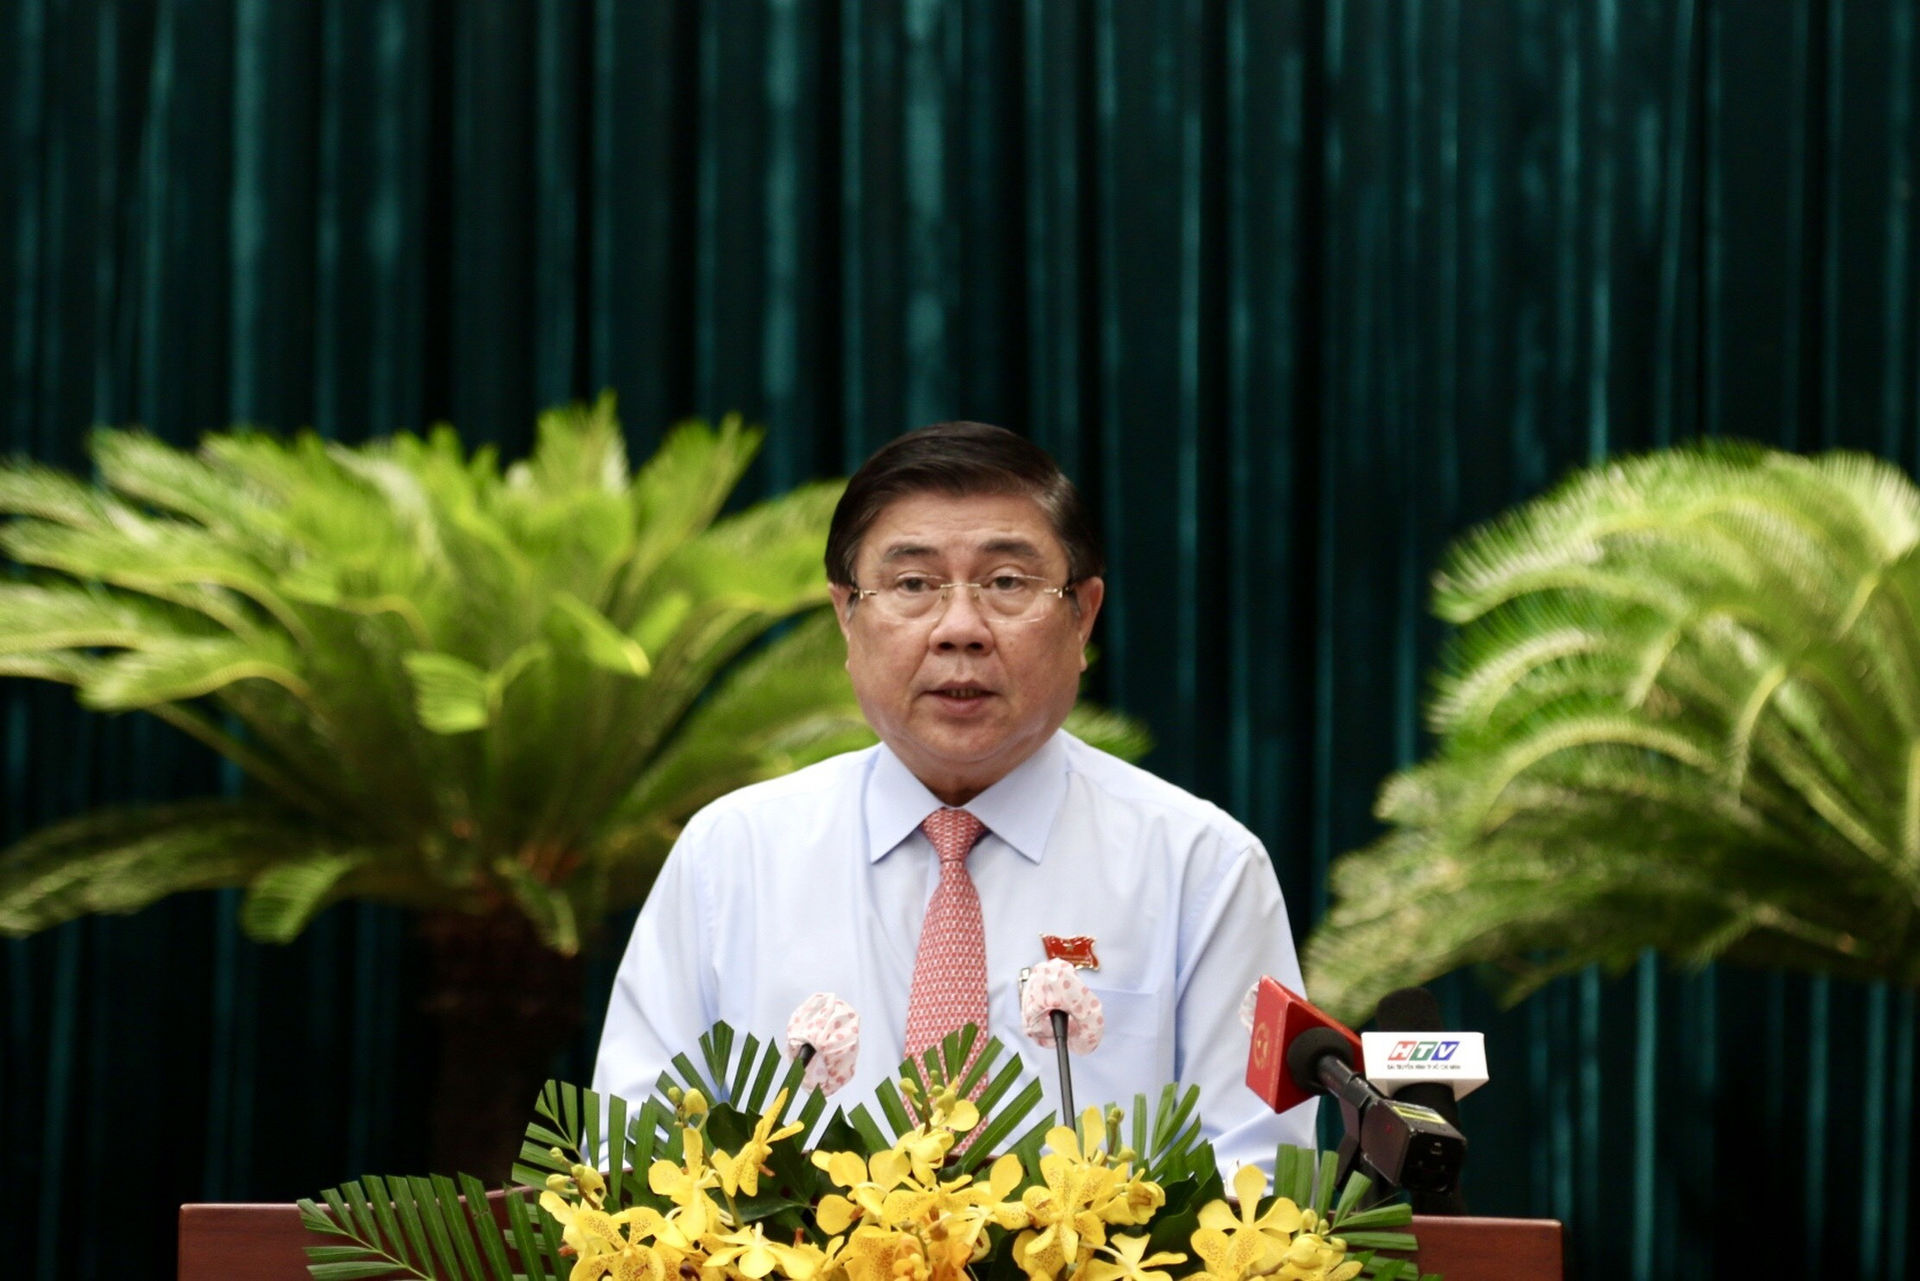 Ông Nguyễn Thành Phong hứa gì sau khi tái đắc cử Chủ tịch UBND TP.HCM? - 1